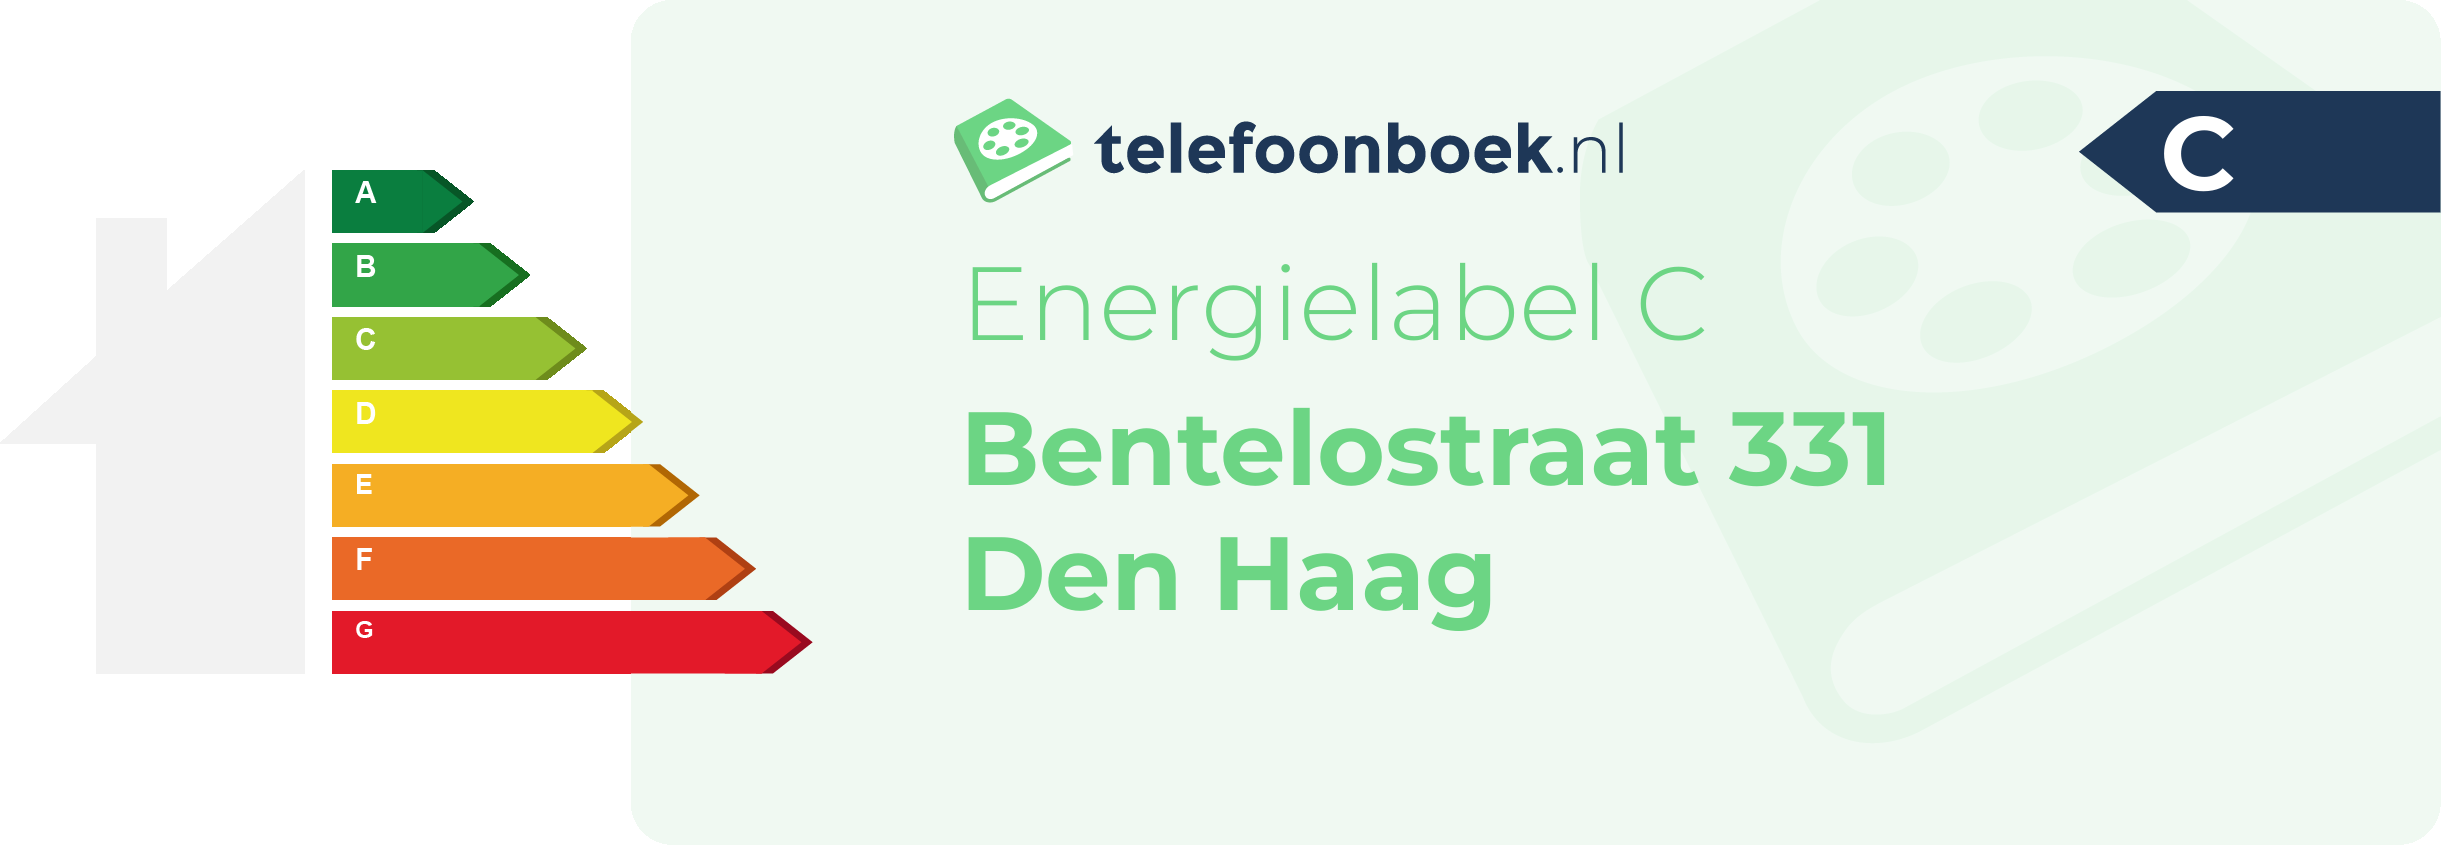 Energielabel Bentelostraat 331 Den Haag